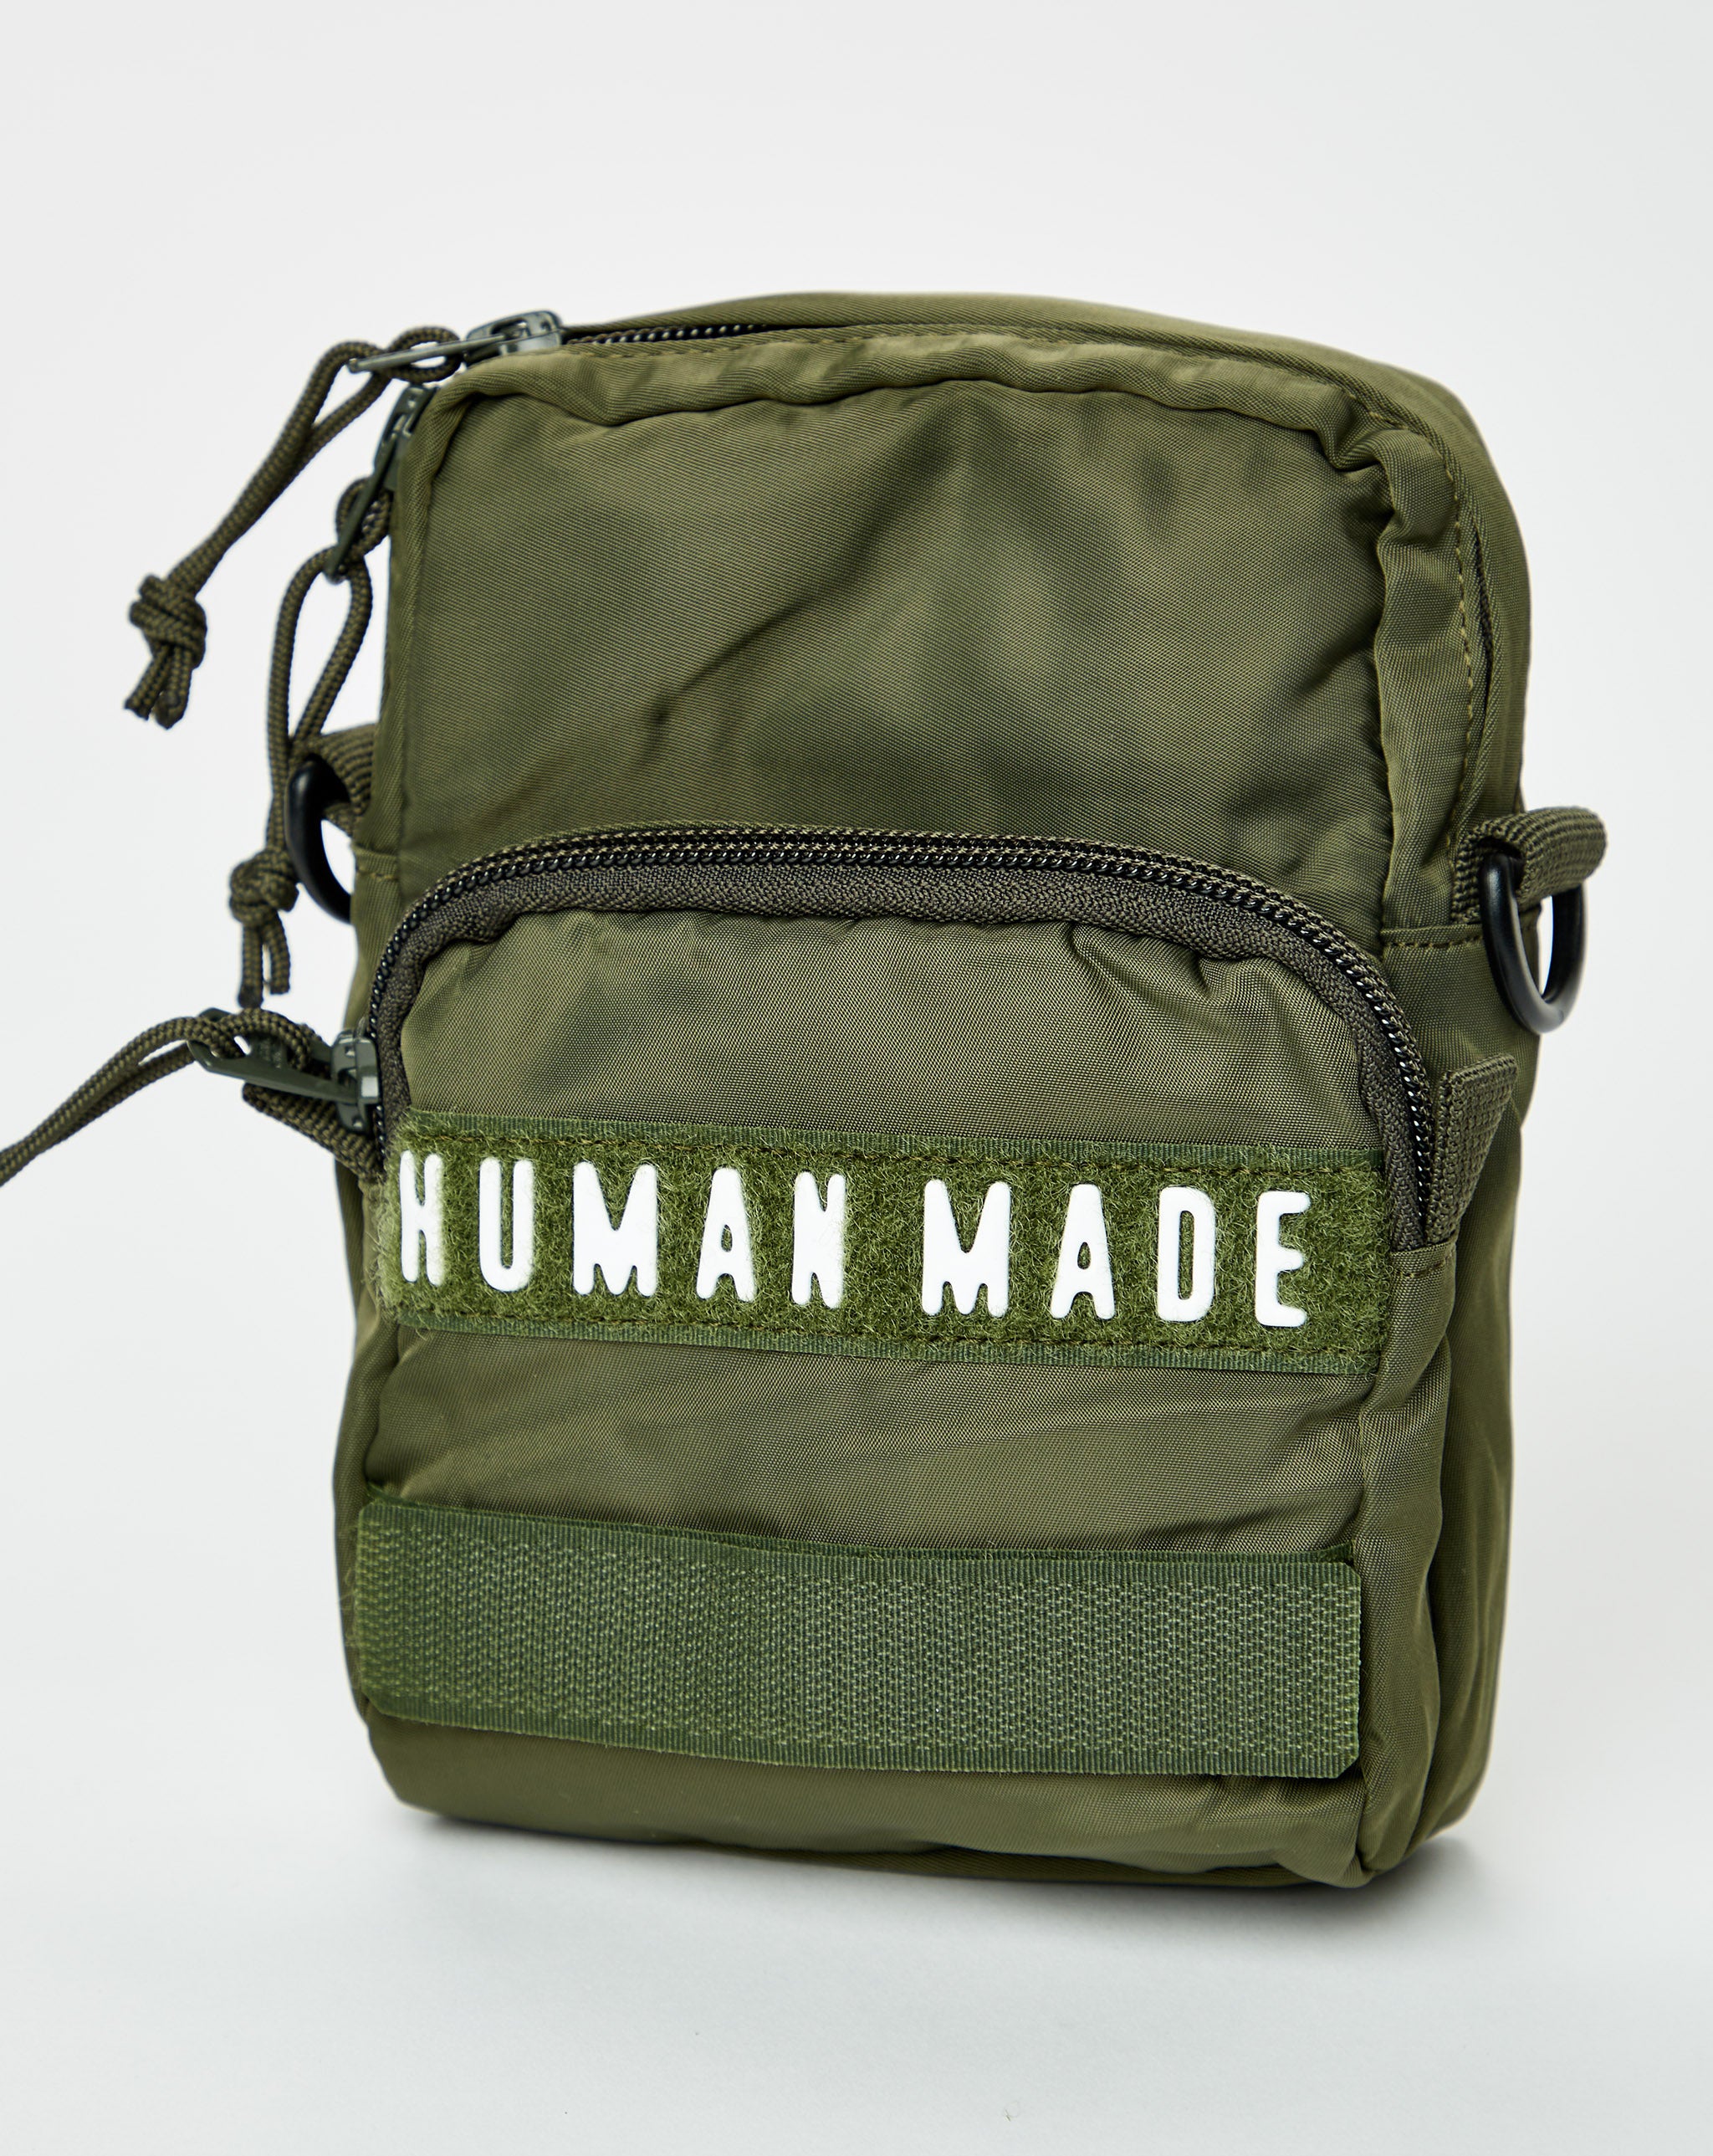 Human Made Bags & Wallets  - Cheap Urlfreeze Jordan outlet